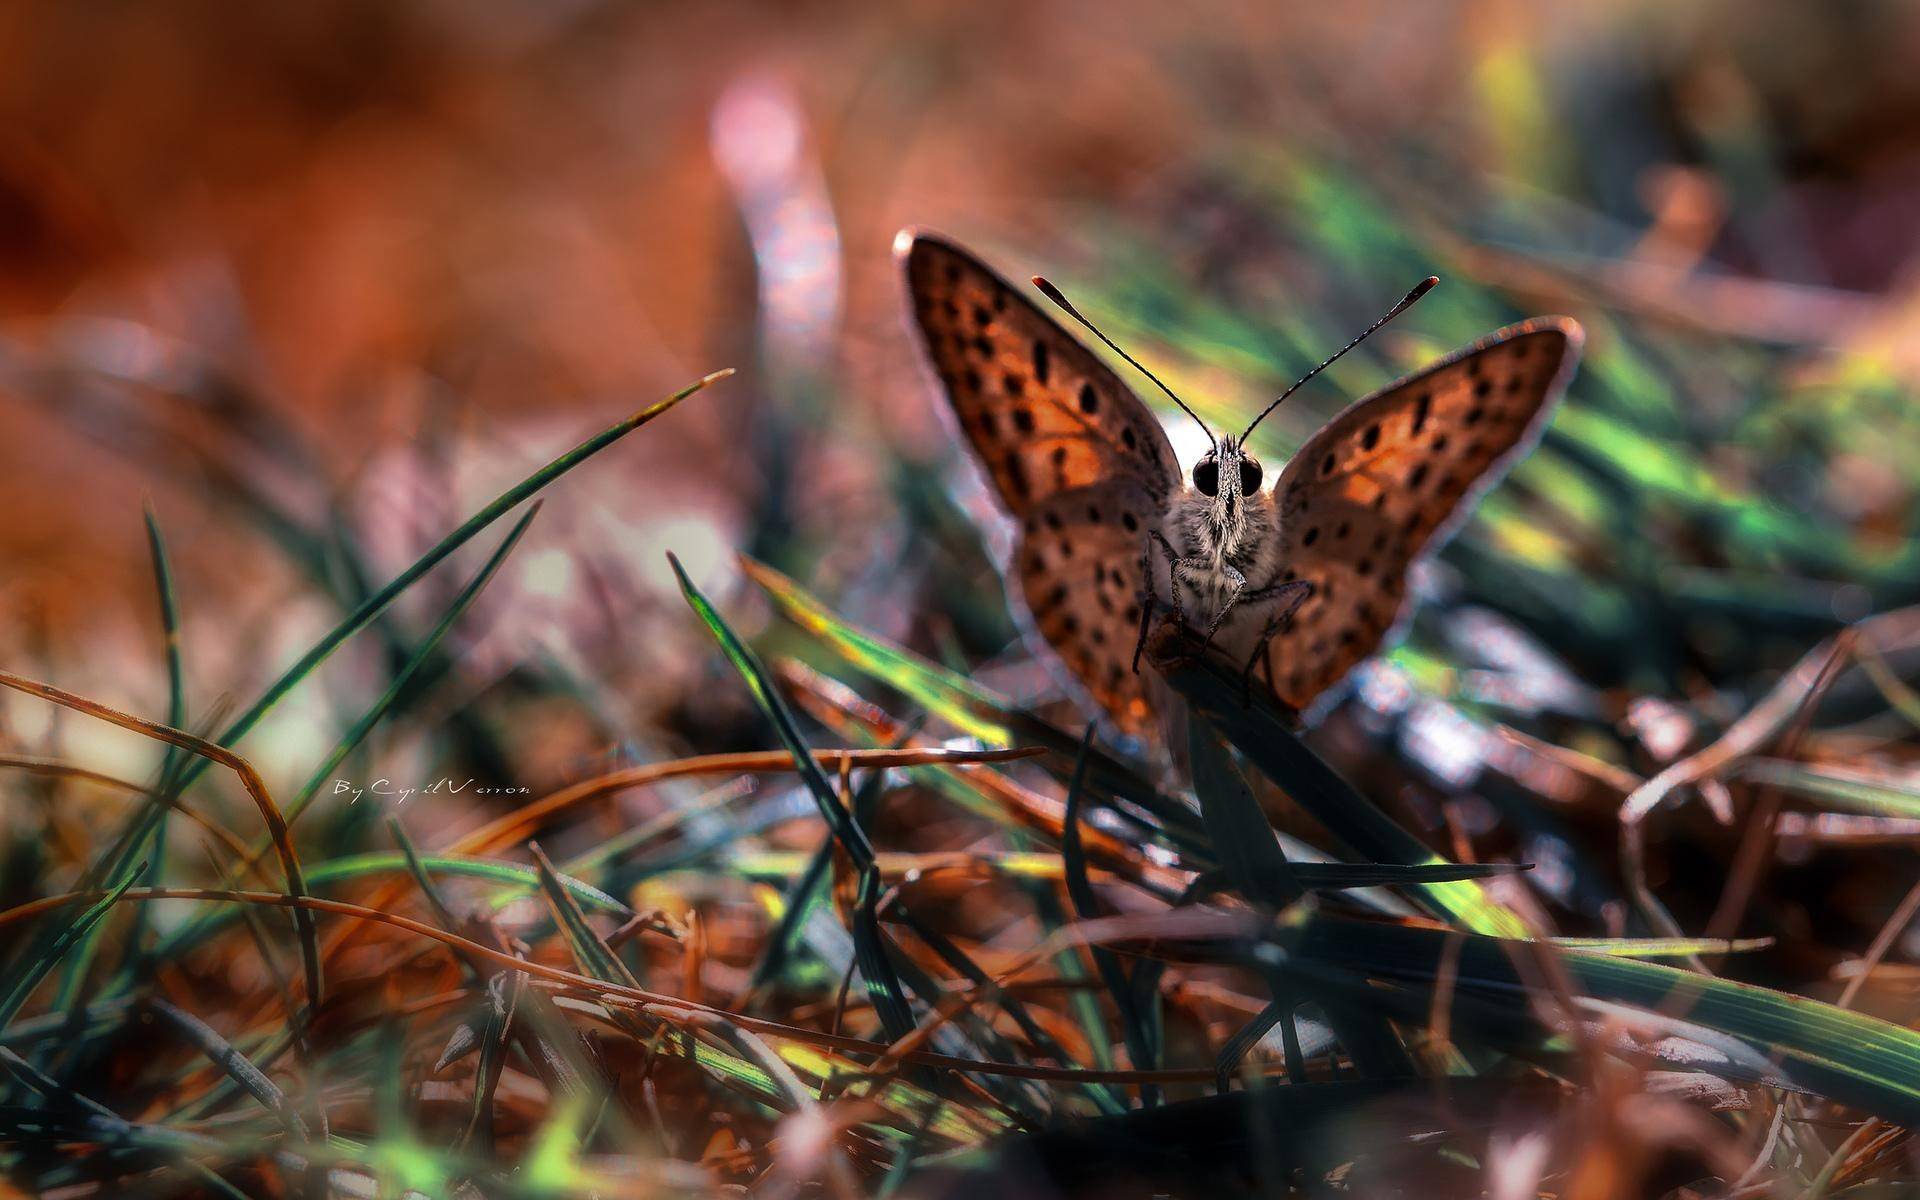 Cute Butterfly On Grass Wallpaper